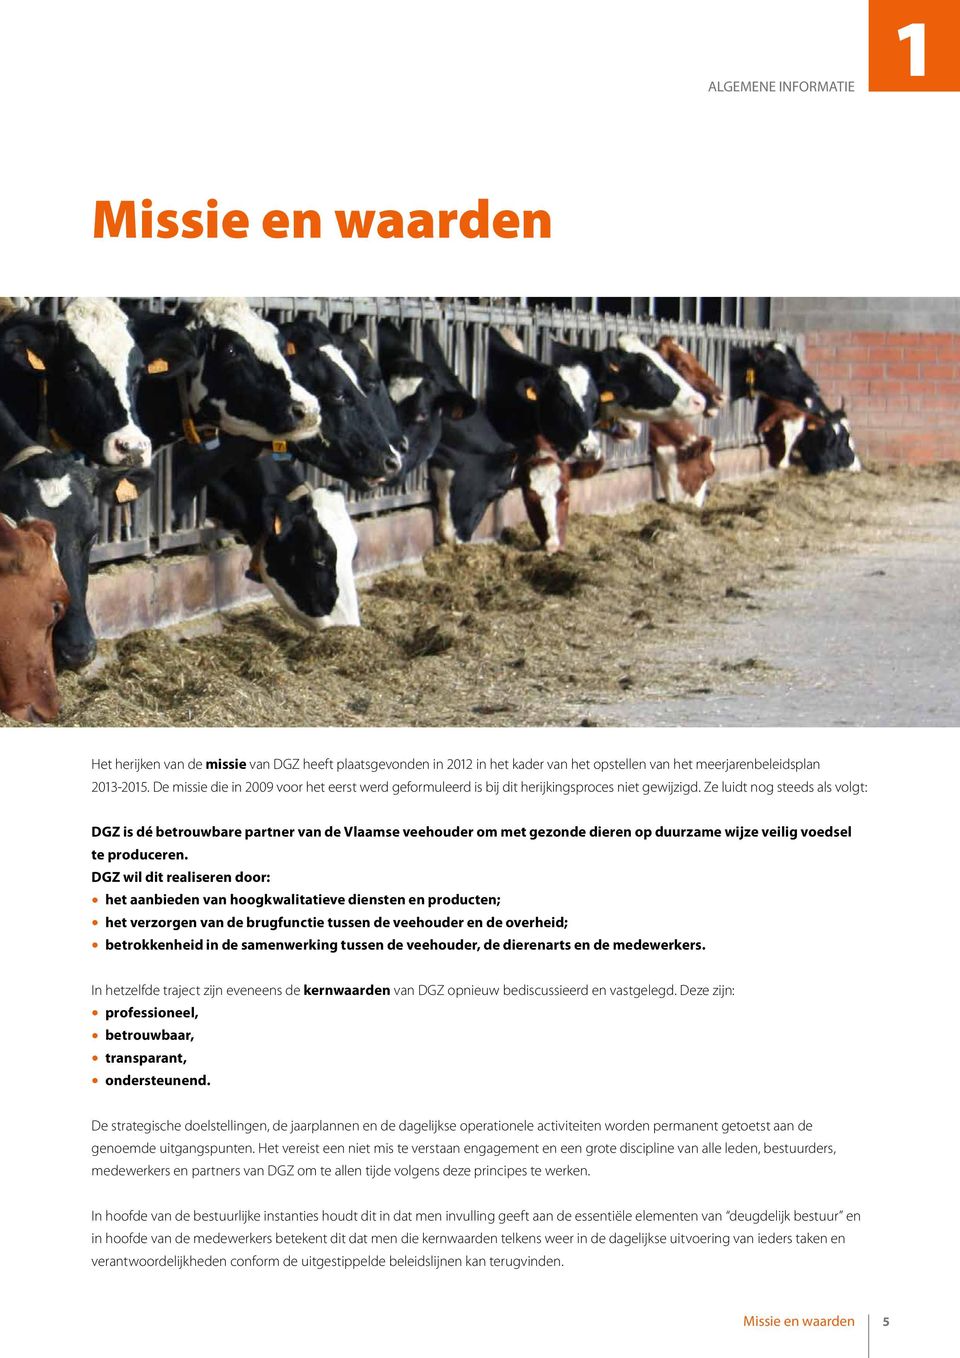 Ze luidt nog steeds als volgt: DGZ is dé betrouwbare partner van de Vlaamse veehouder om met gezonde dieren op duurzame wijze veilig voedsel te produceren.